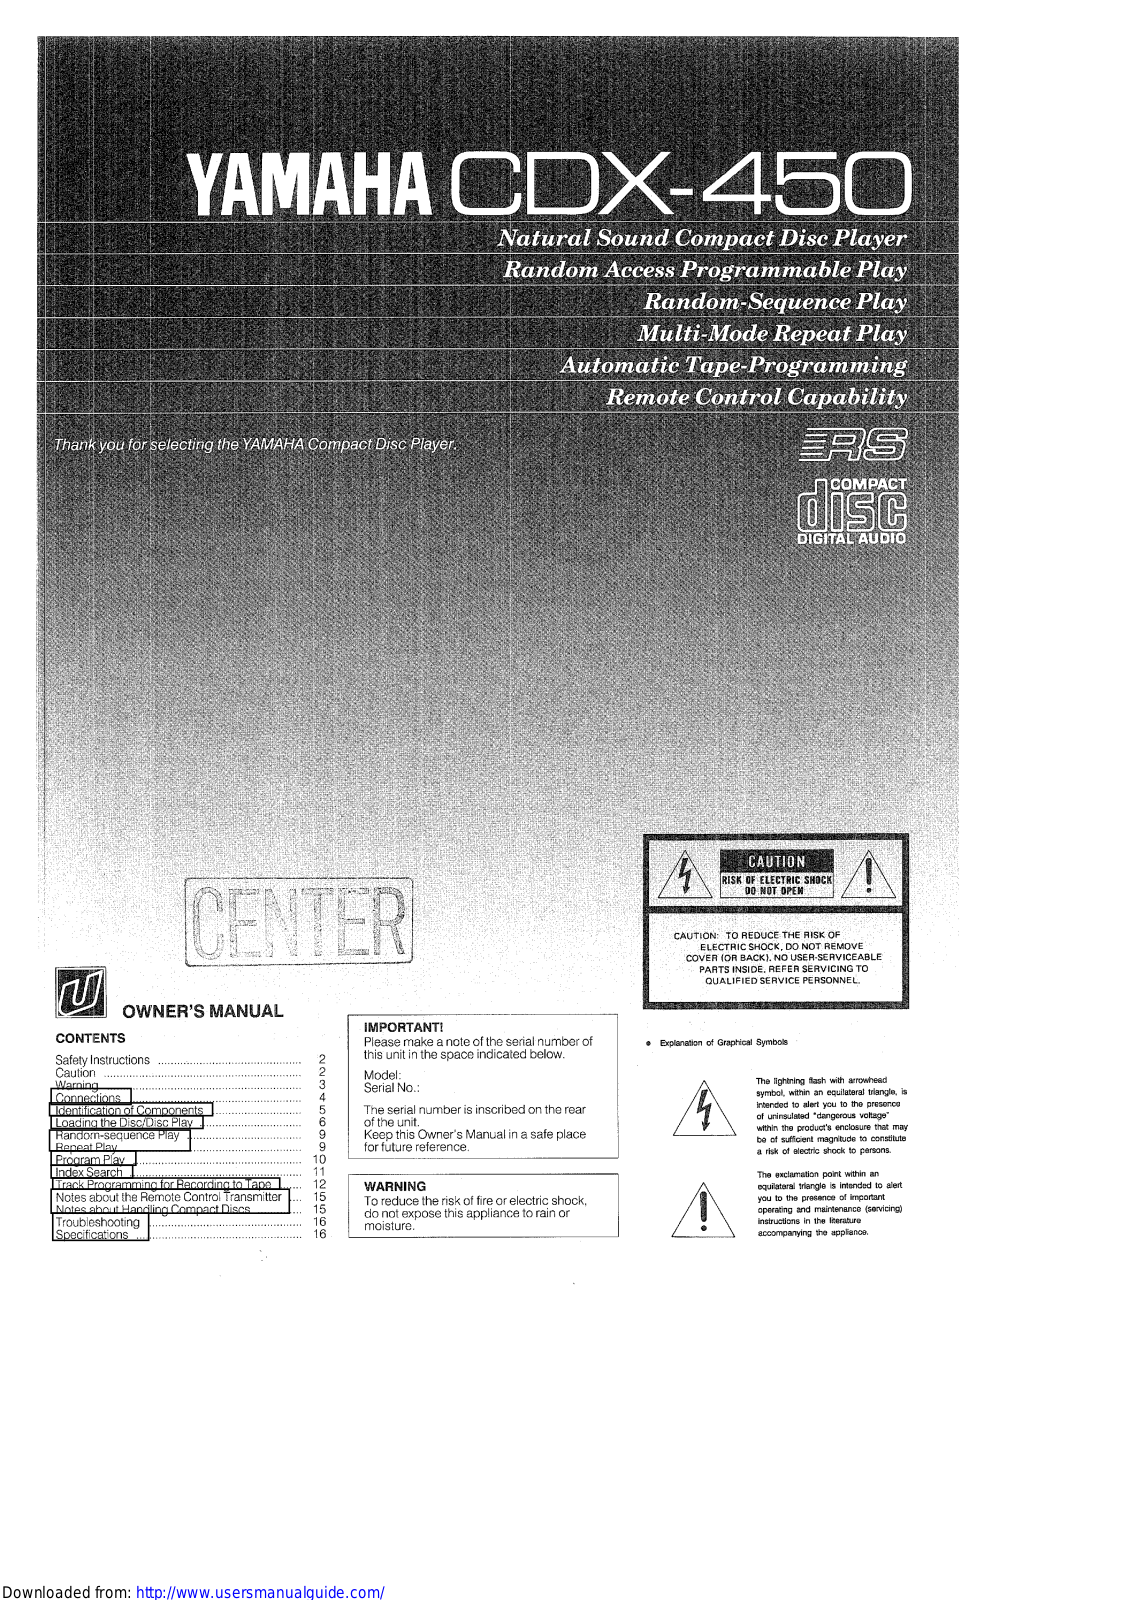 Yamaha Audio CDX-450 User Manual